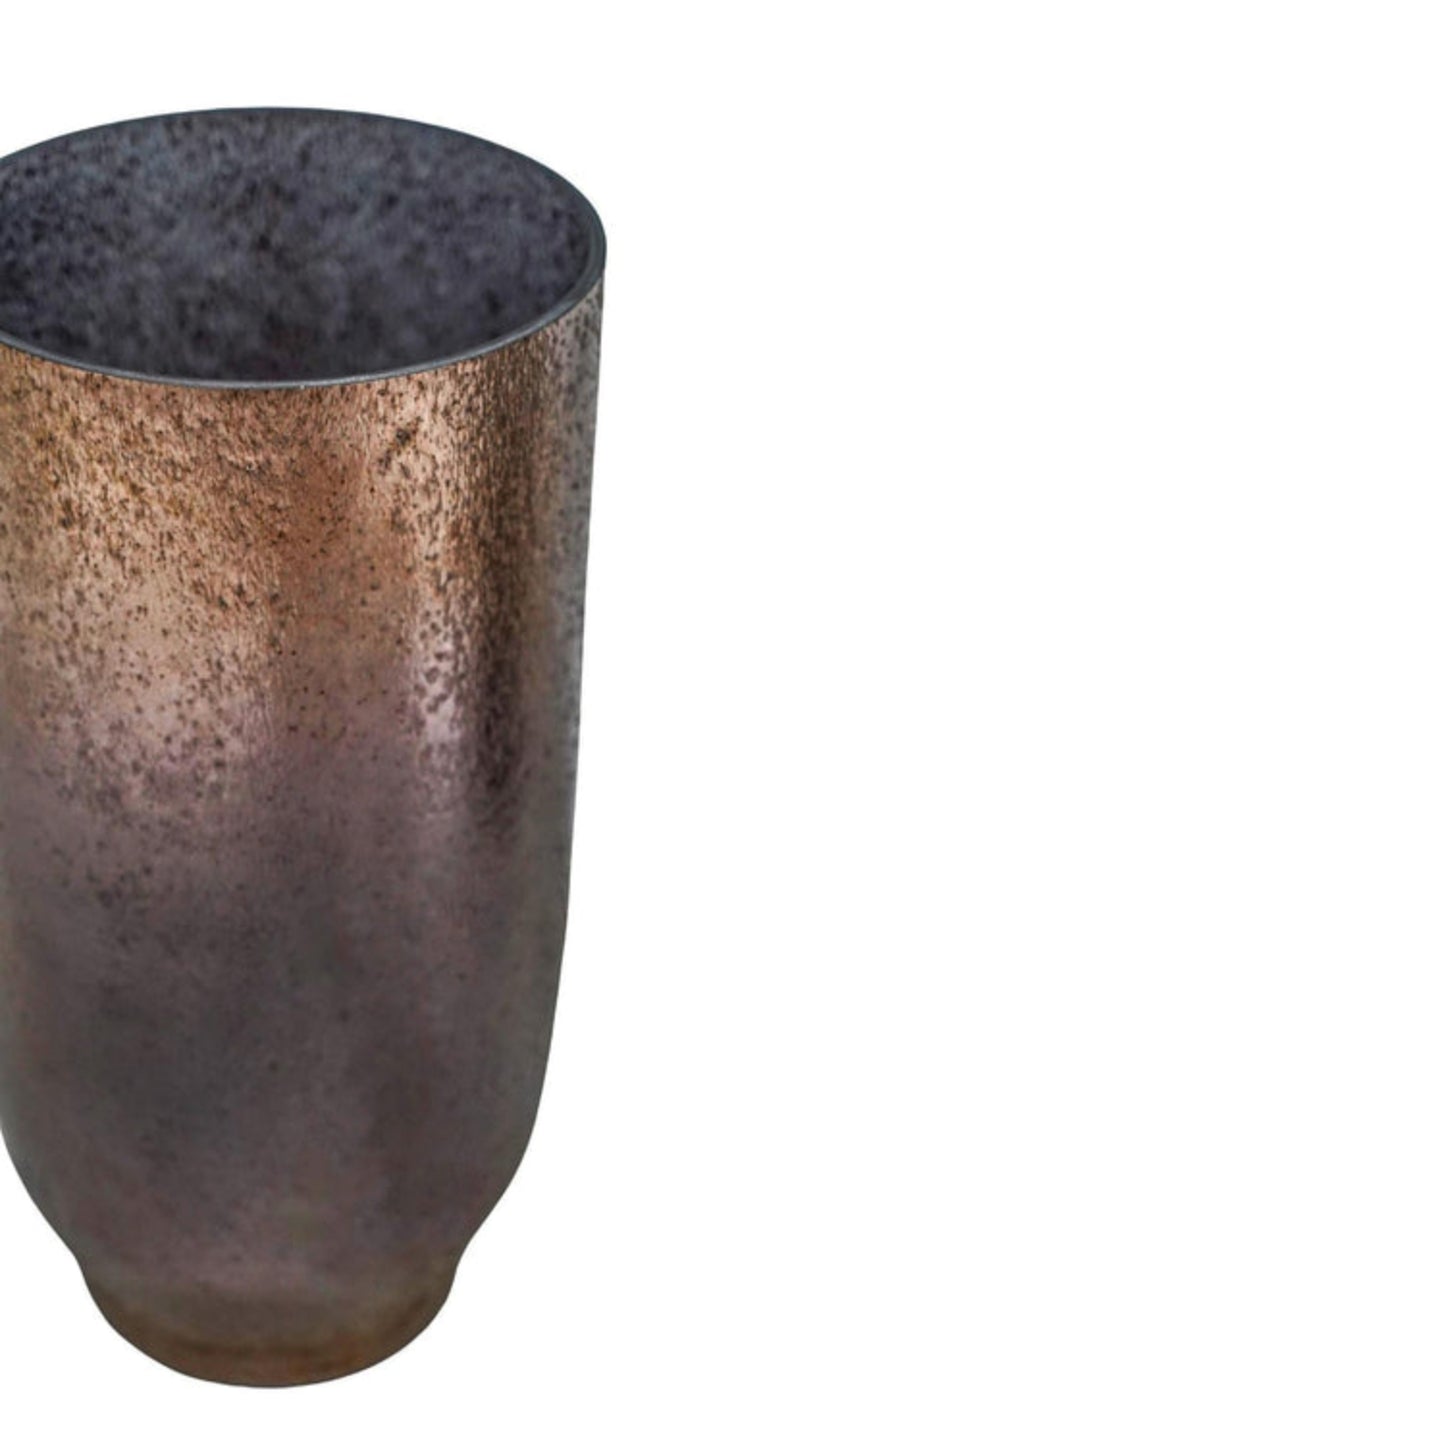 Opulent Tall Metallic Finish Glass Vase